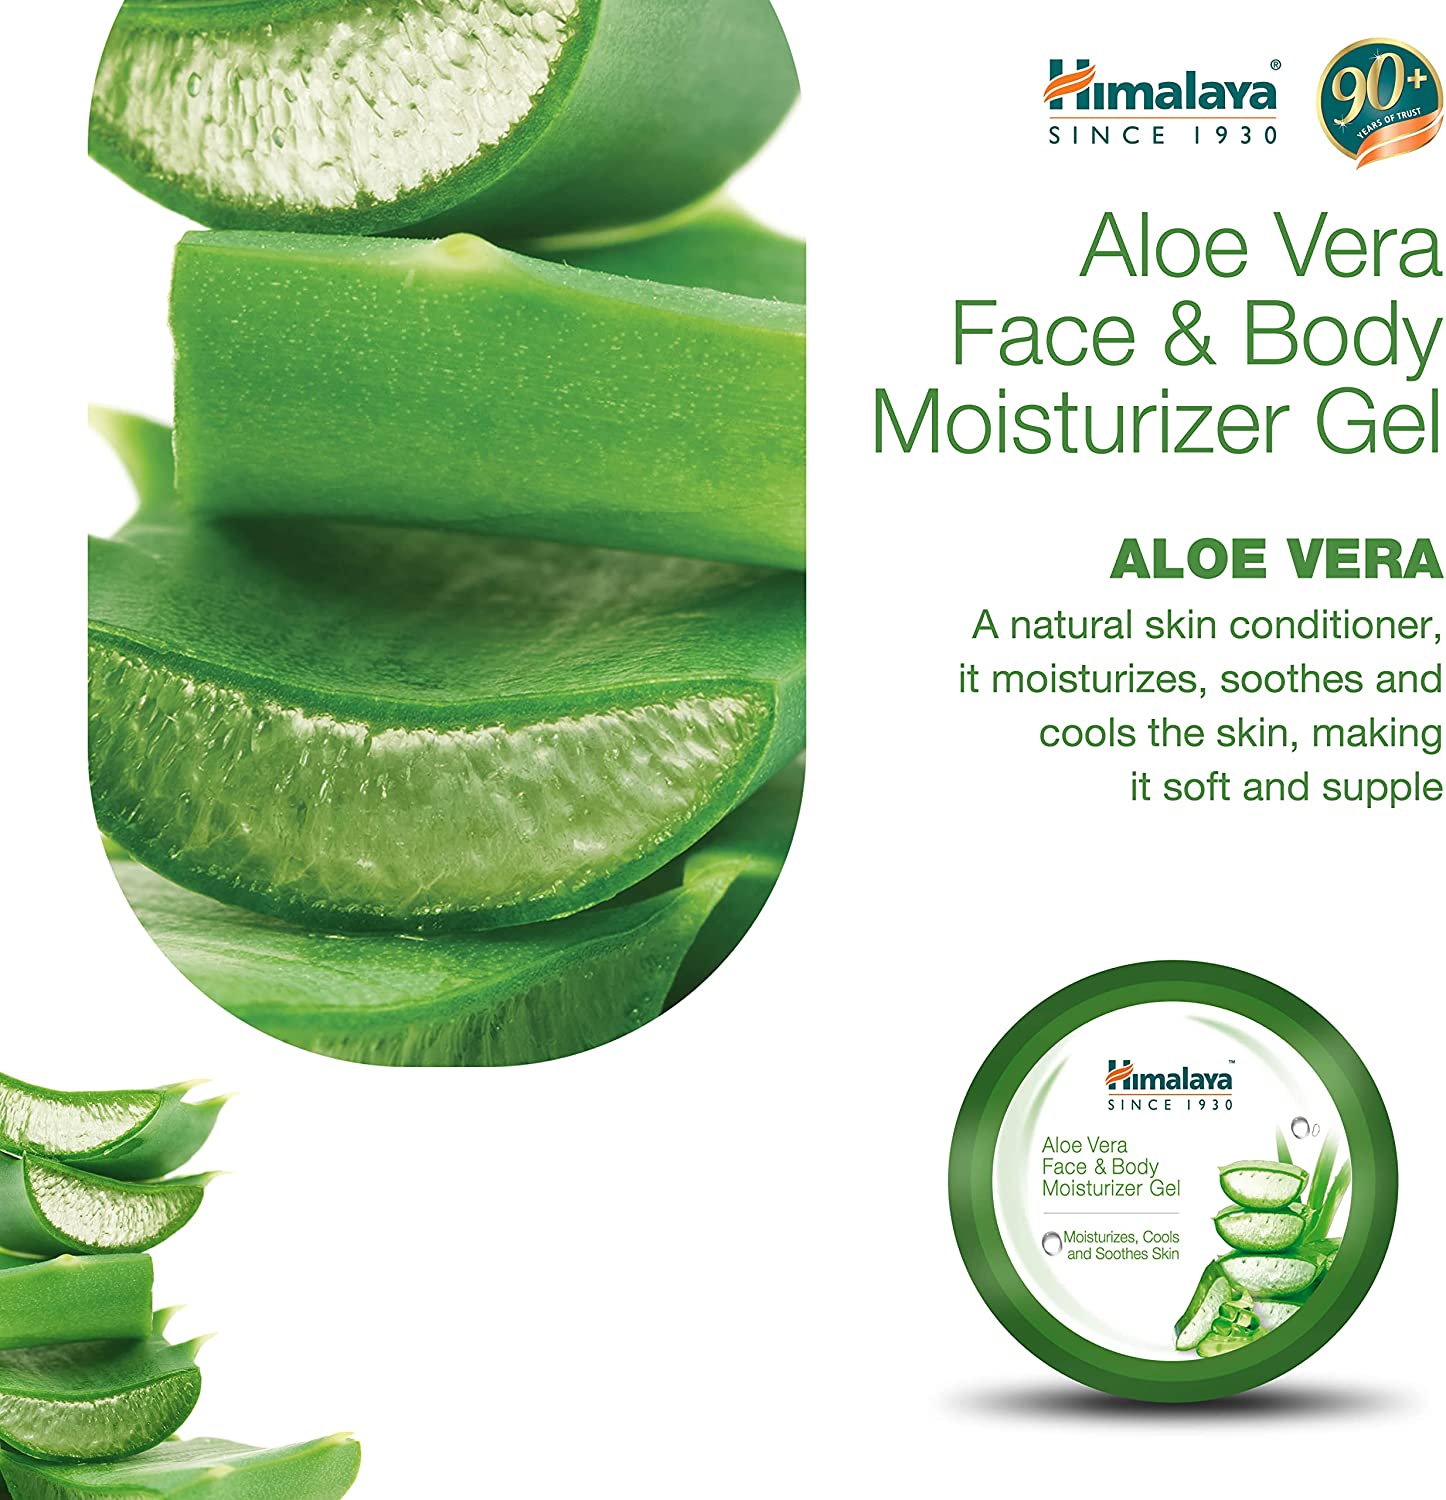 Himalaya Aloe Vera Face & Body Moisturizer Gel - Himalaya Aloe Vera Gel